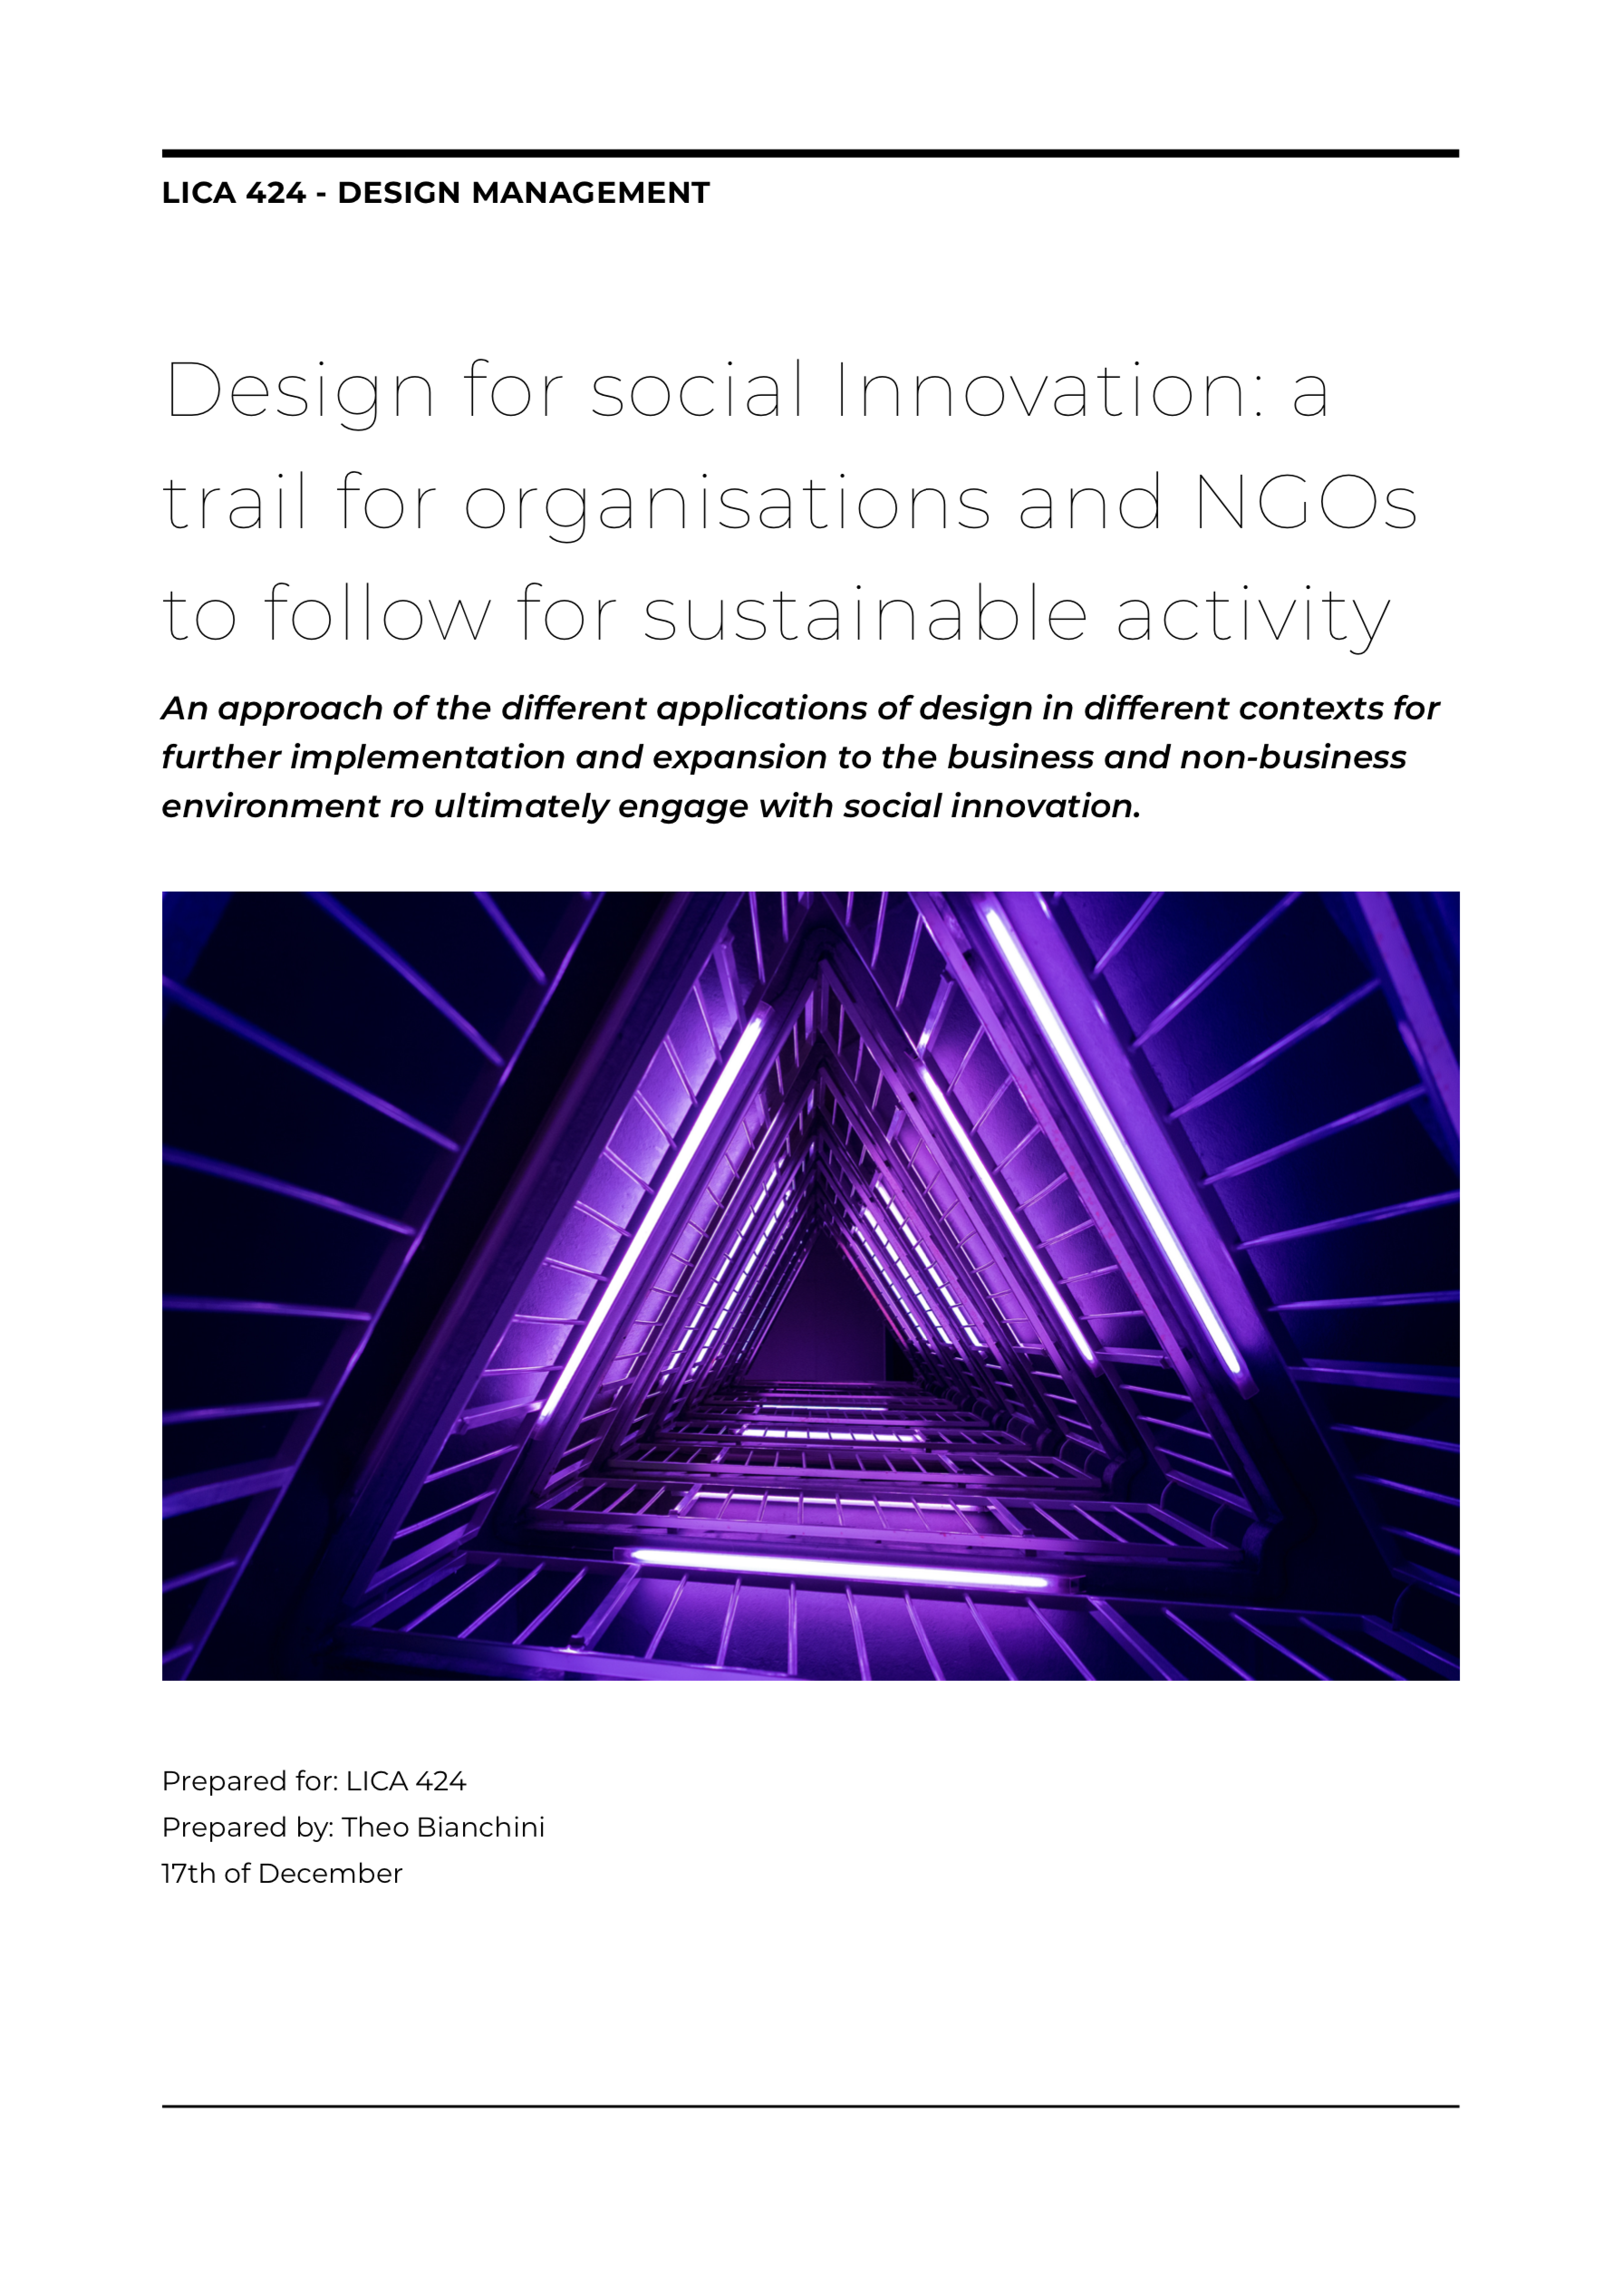 レポート「ソーシャルイノベーションのためのデザイン：企業とNGOがサステナブルな活動を行うための指針」